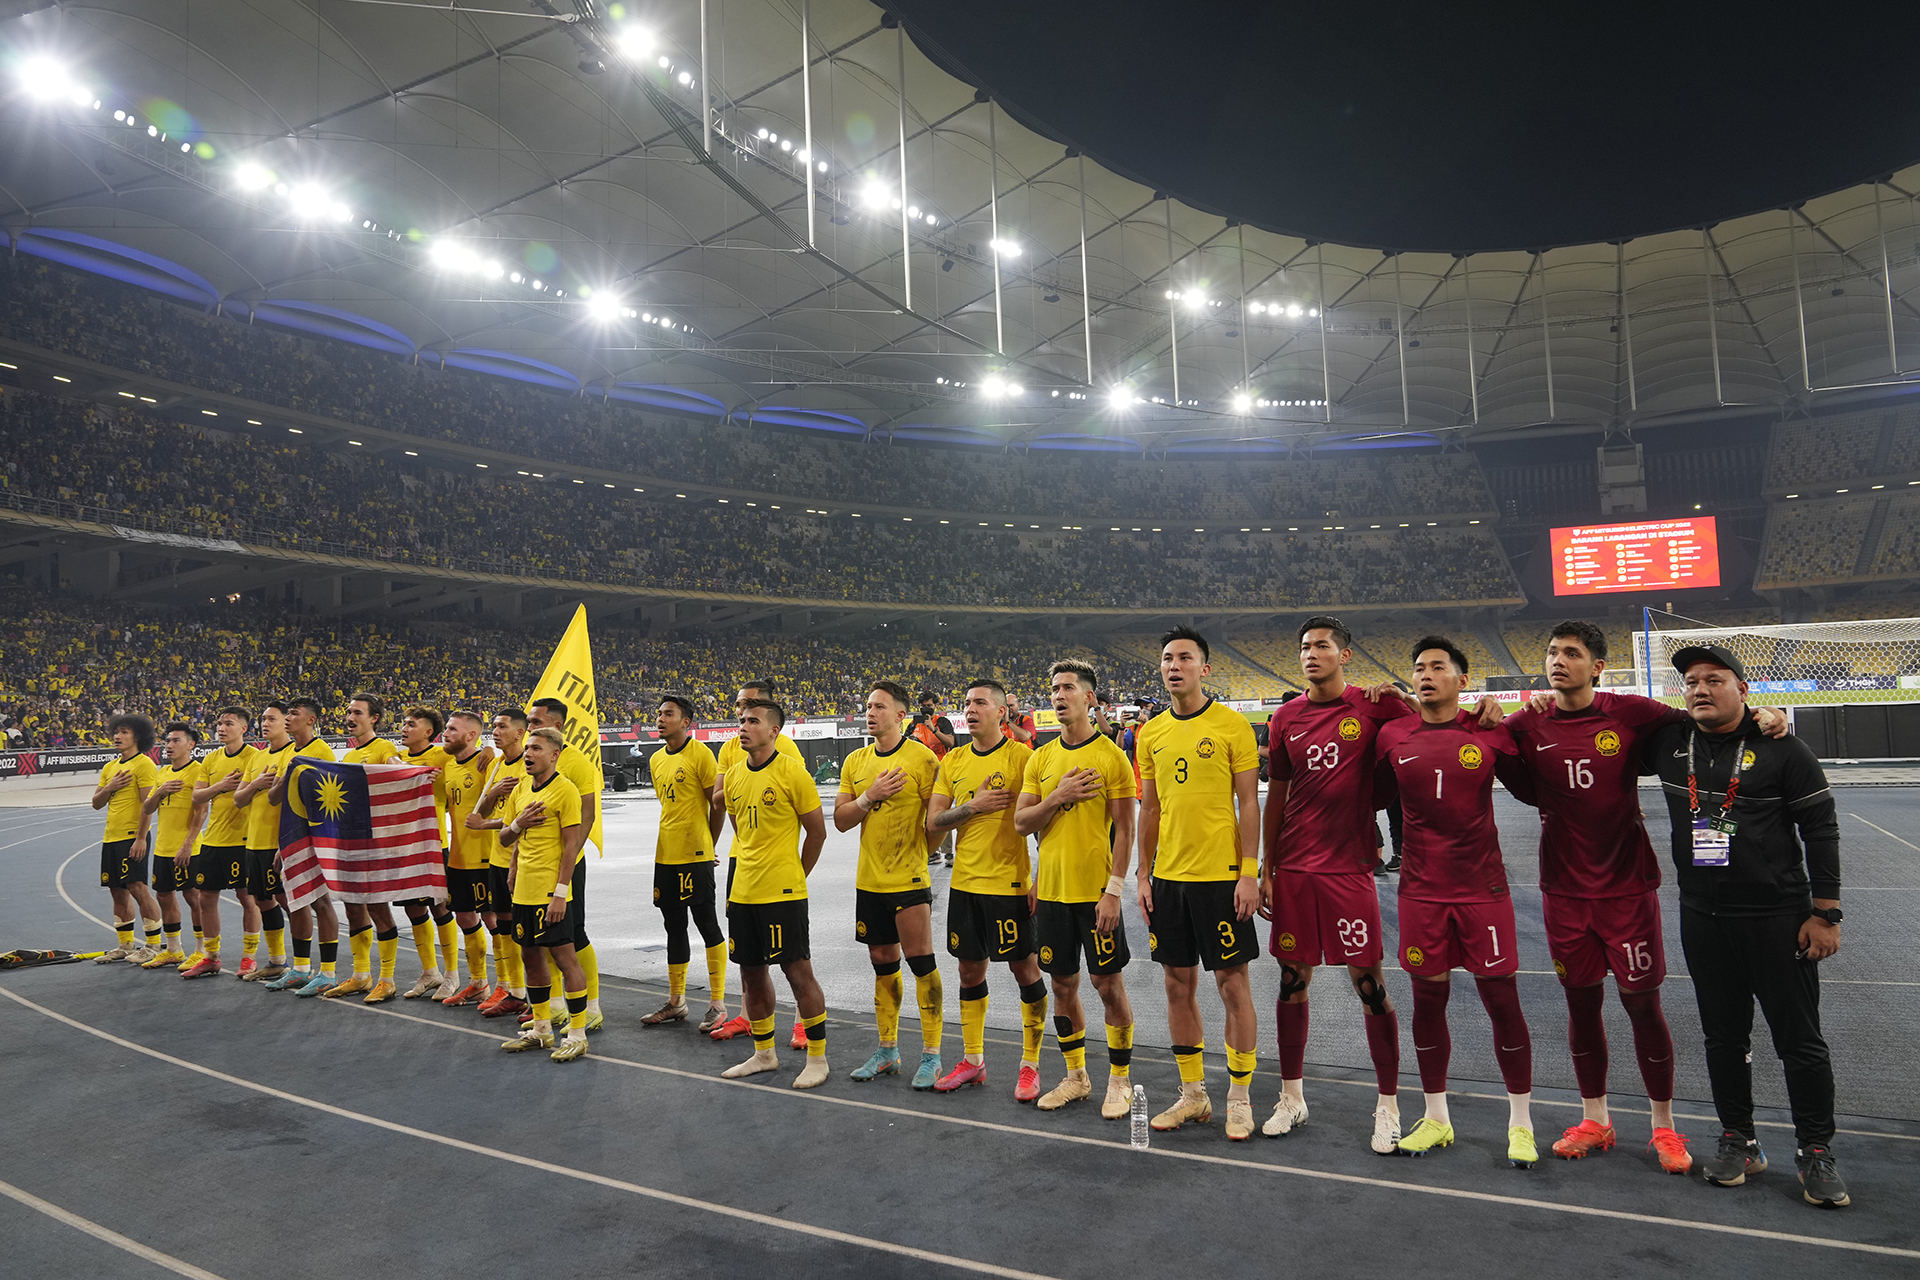 ماليزيا في كأس آسيا 2023.. تاريخ متواضع بالبطولة القارية | رياضة – البوكس نيوز